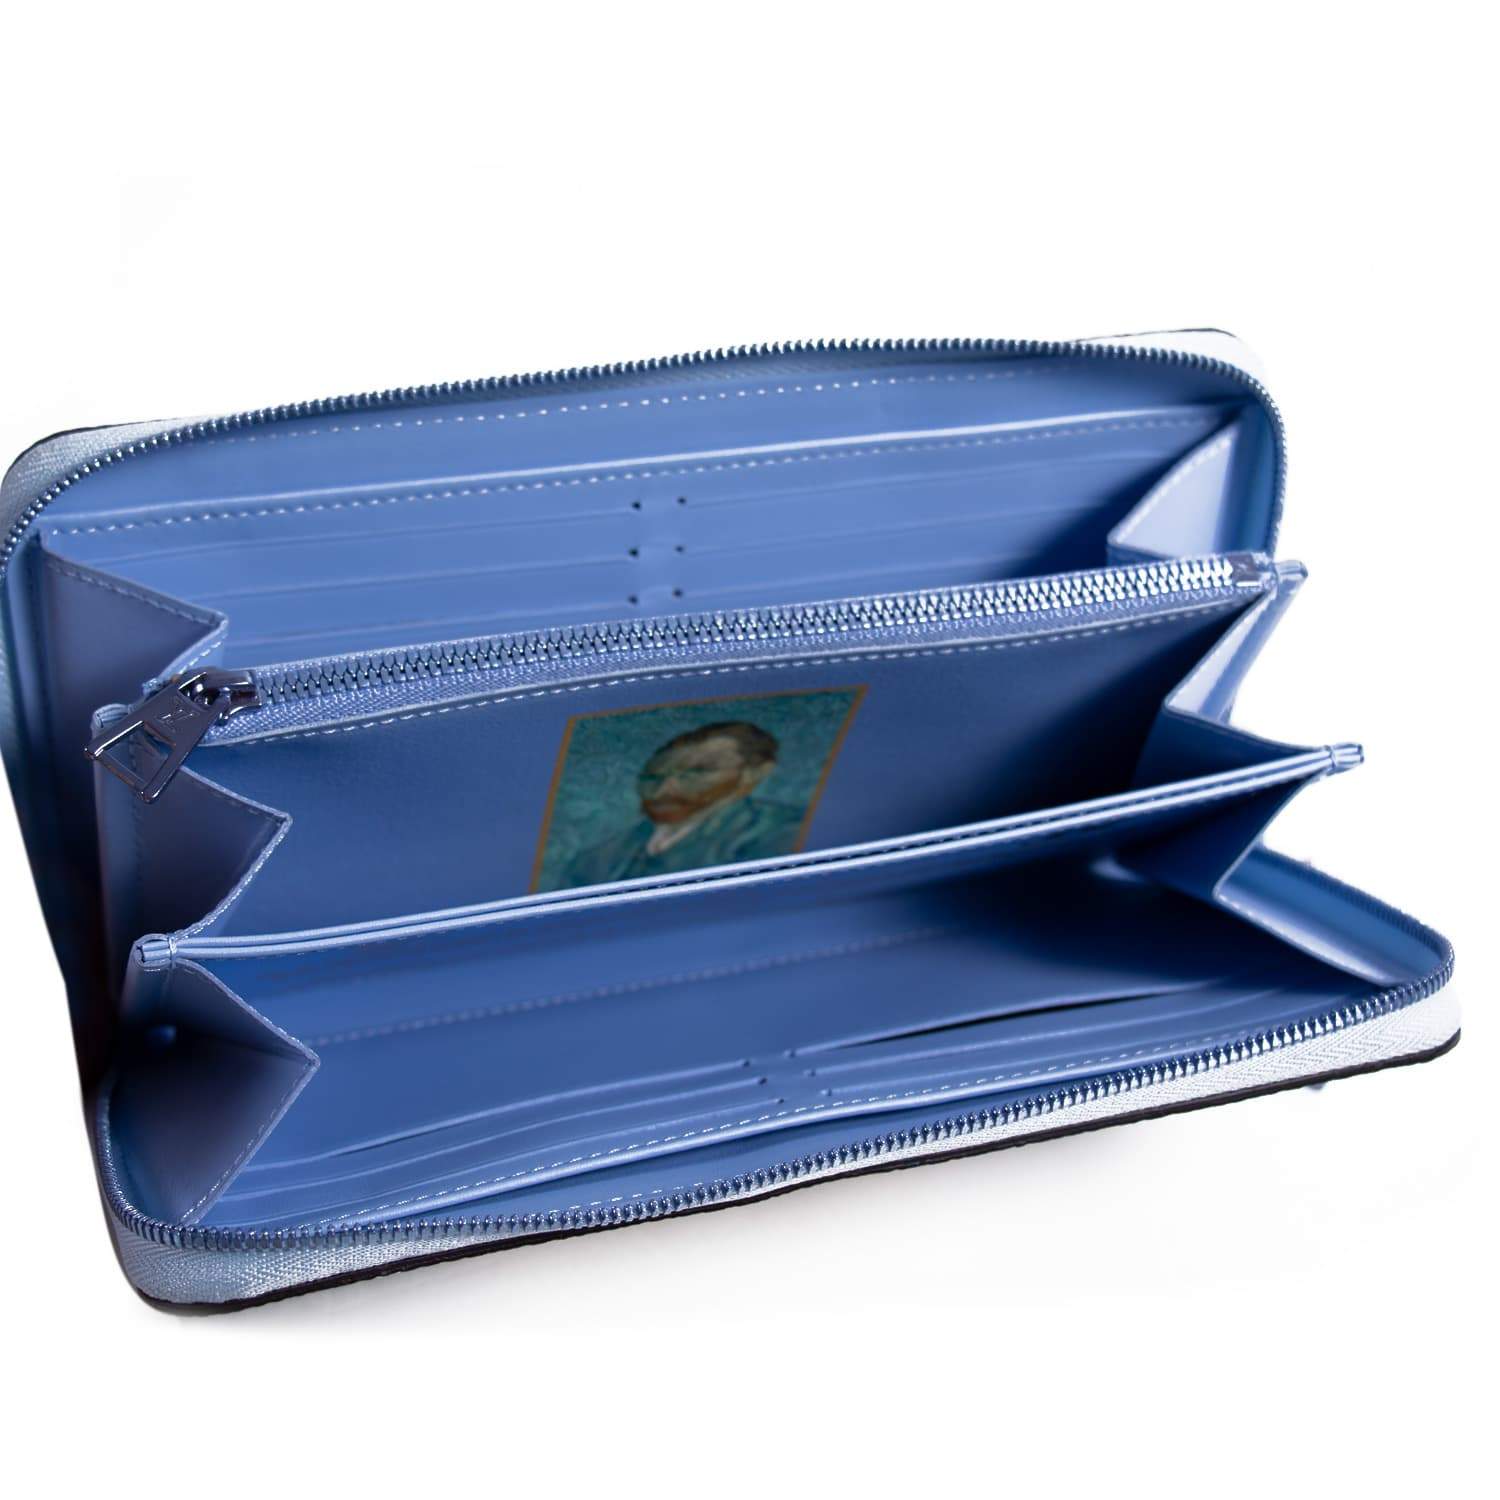 Claude Monet Shoulder Bag | Louis Vuitton Monet Bag | Claude Monet Hand Bag  - Handbag - Aliexpress